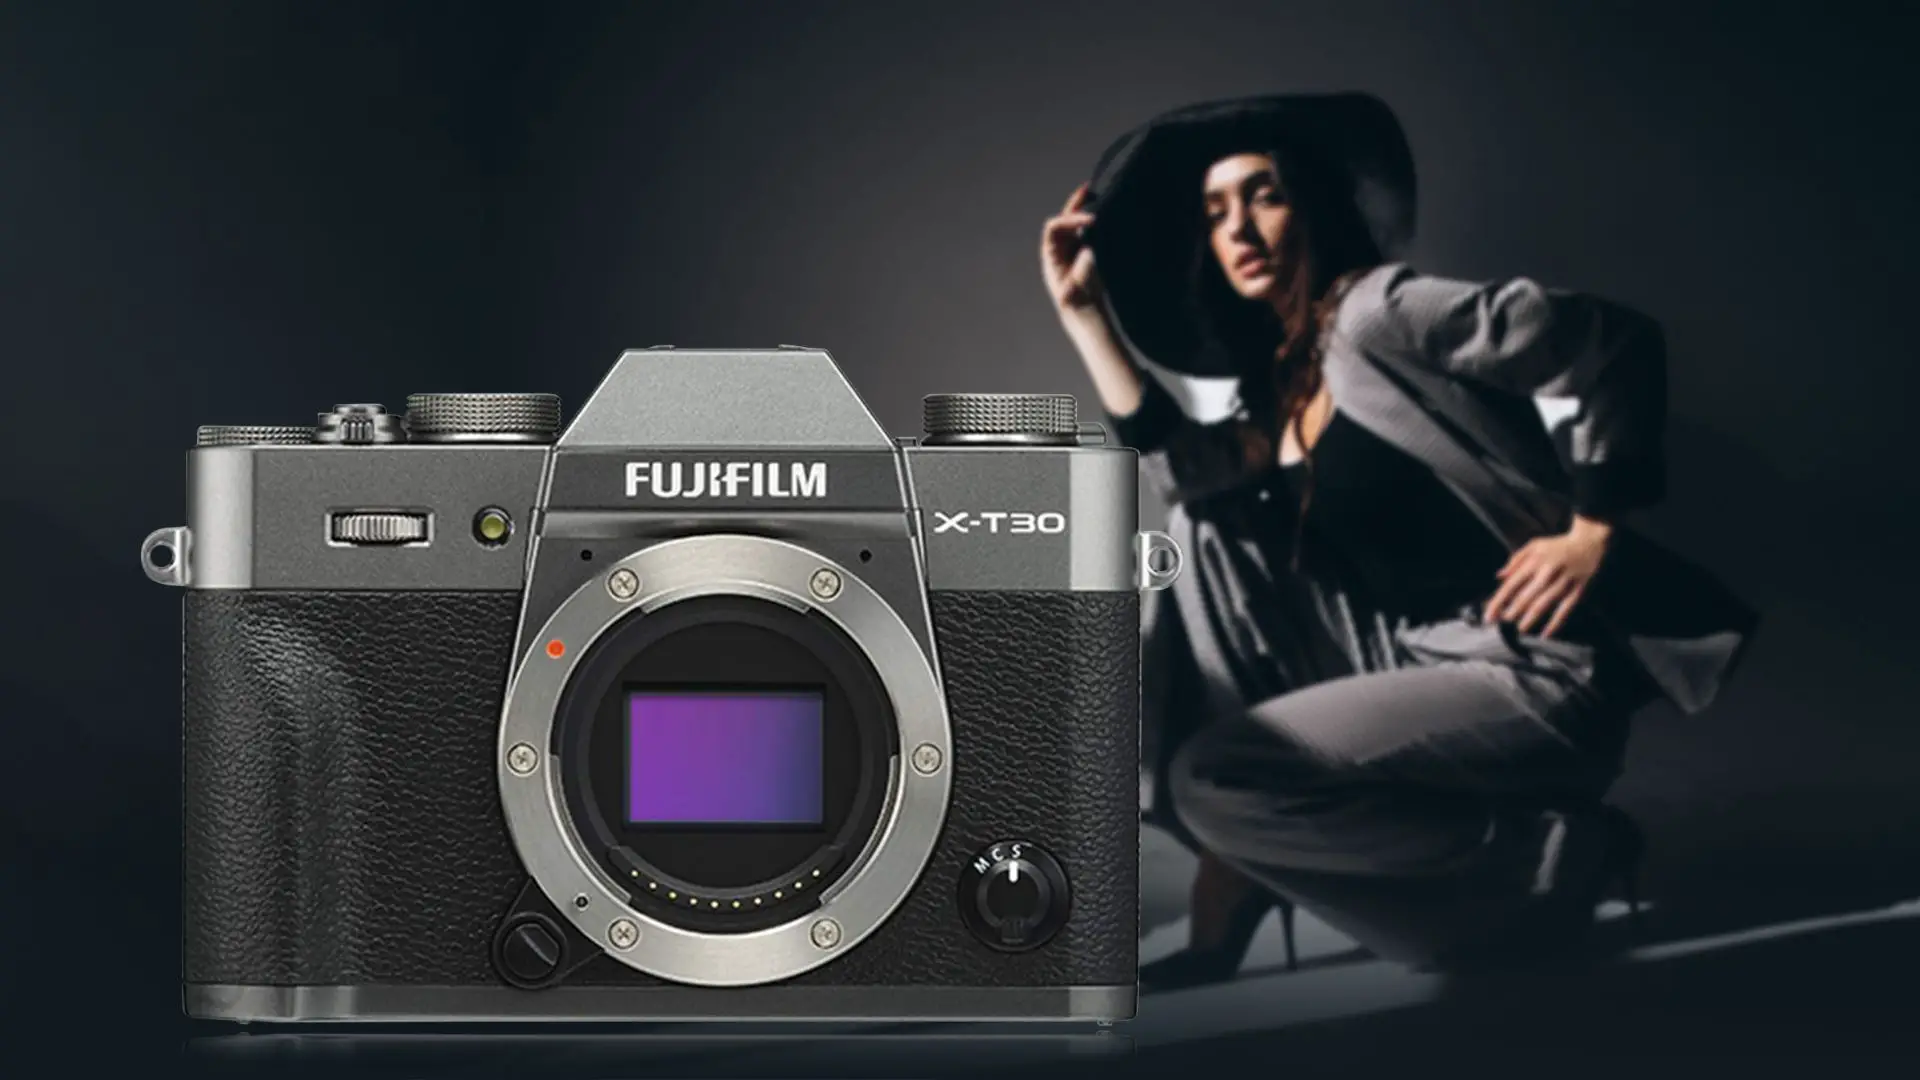  Fujifilm X-T30